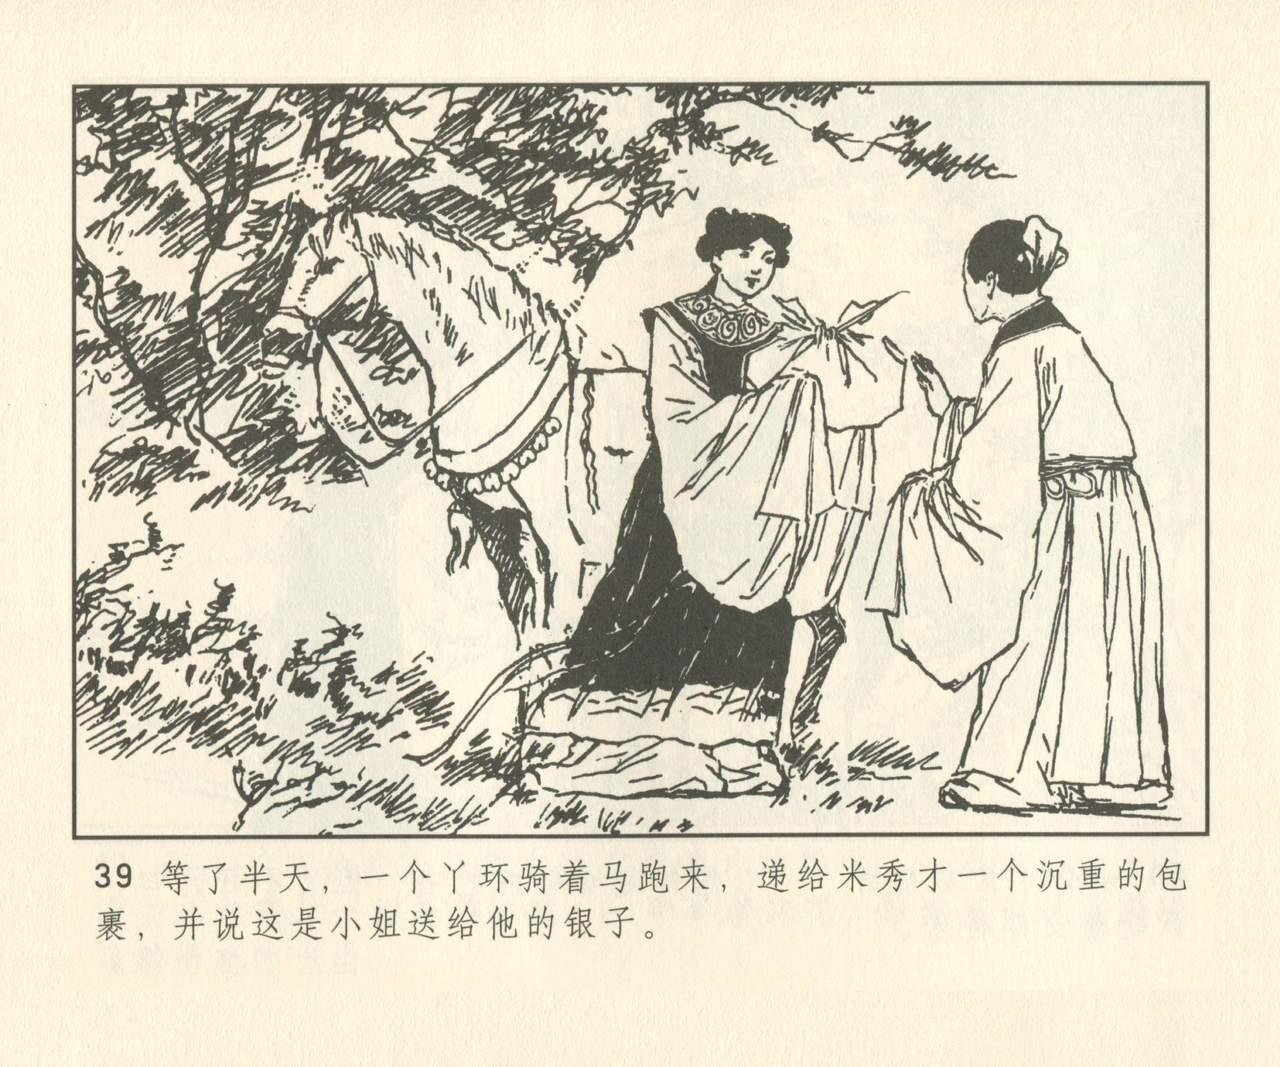 聊斋志异 张玮等绘 天津人民美术出版社 卷二十一 ~ 三十 167